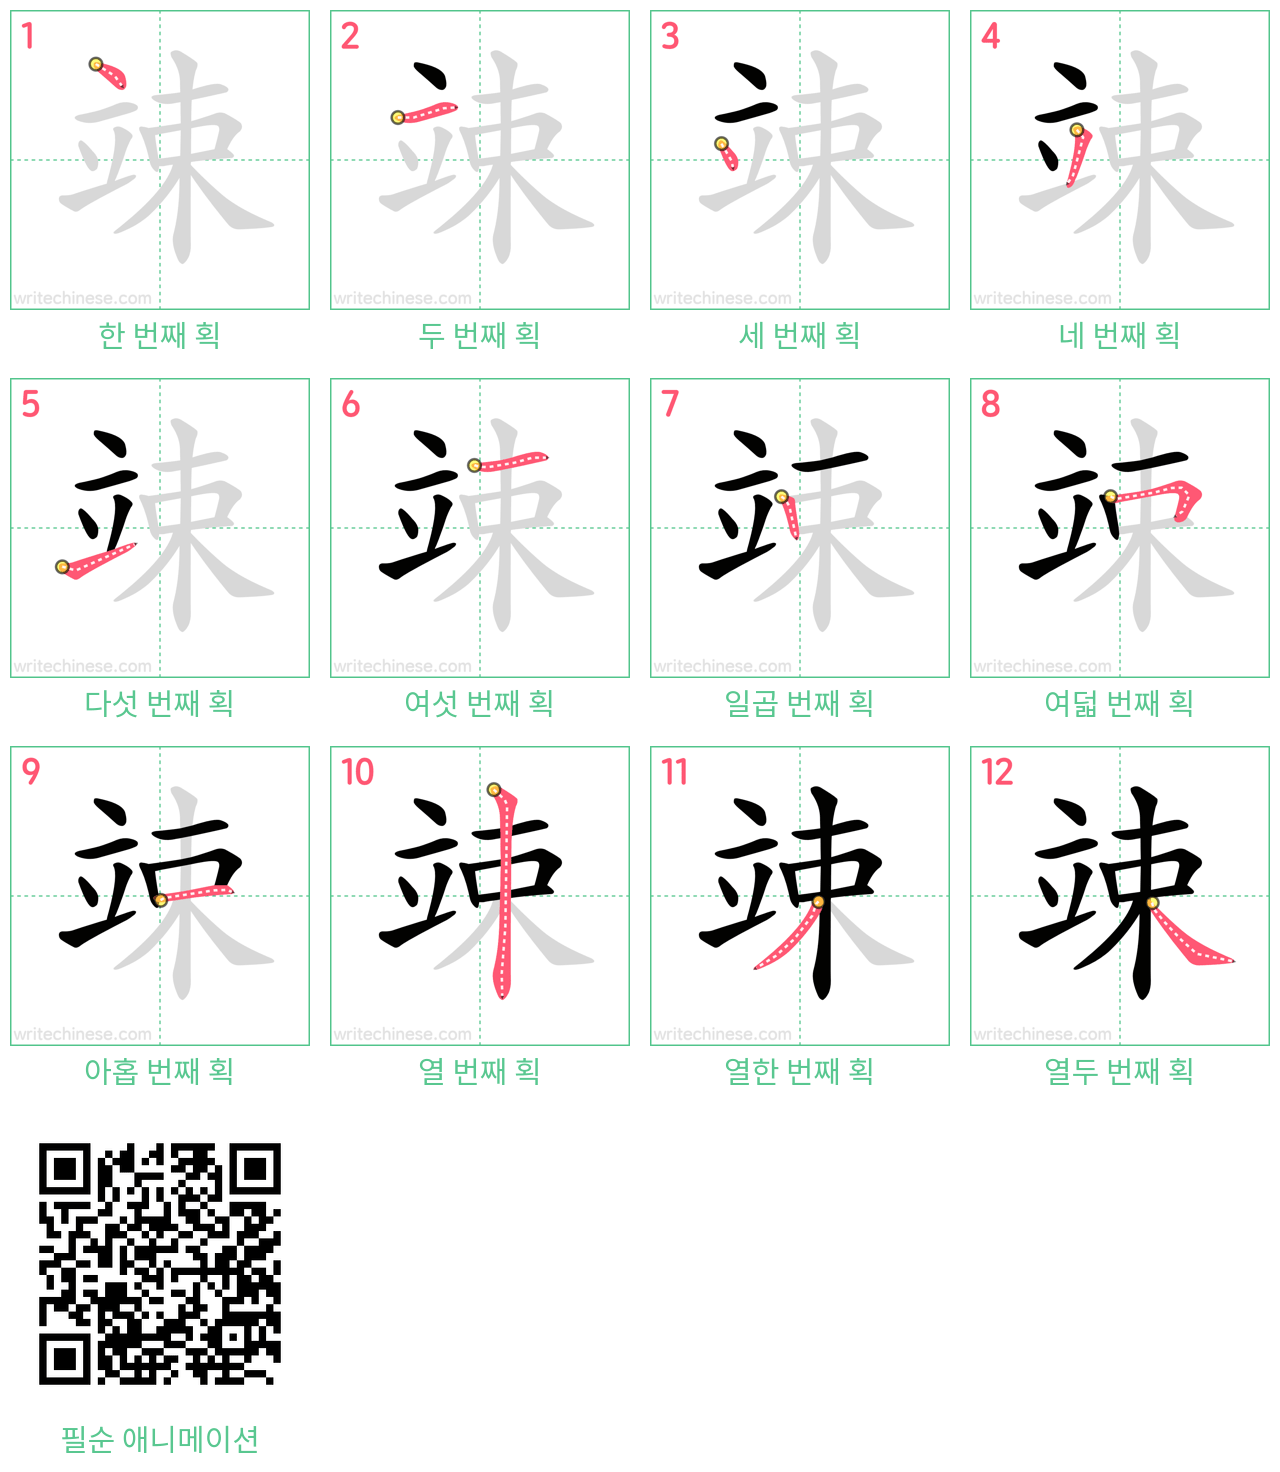 竦 step-by-step stroke order diagrams